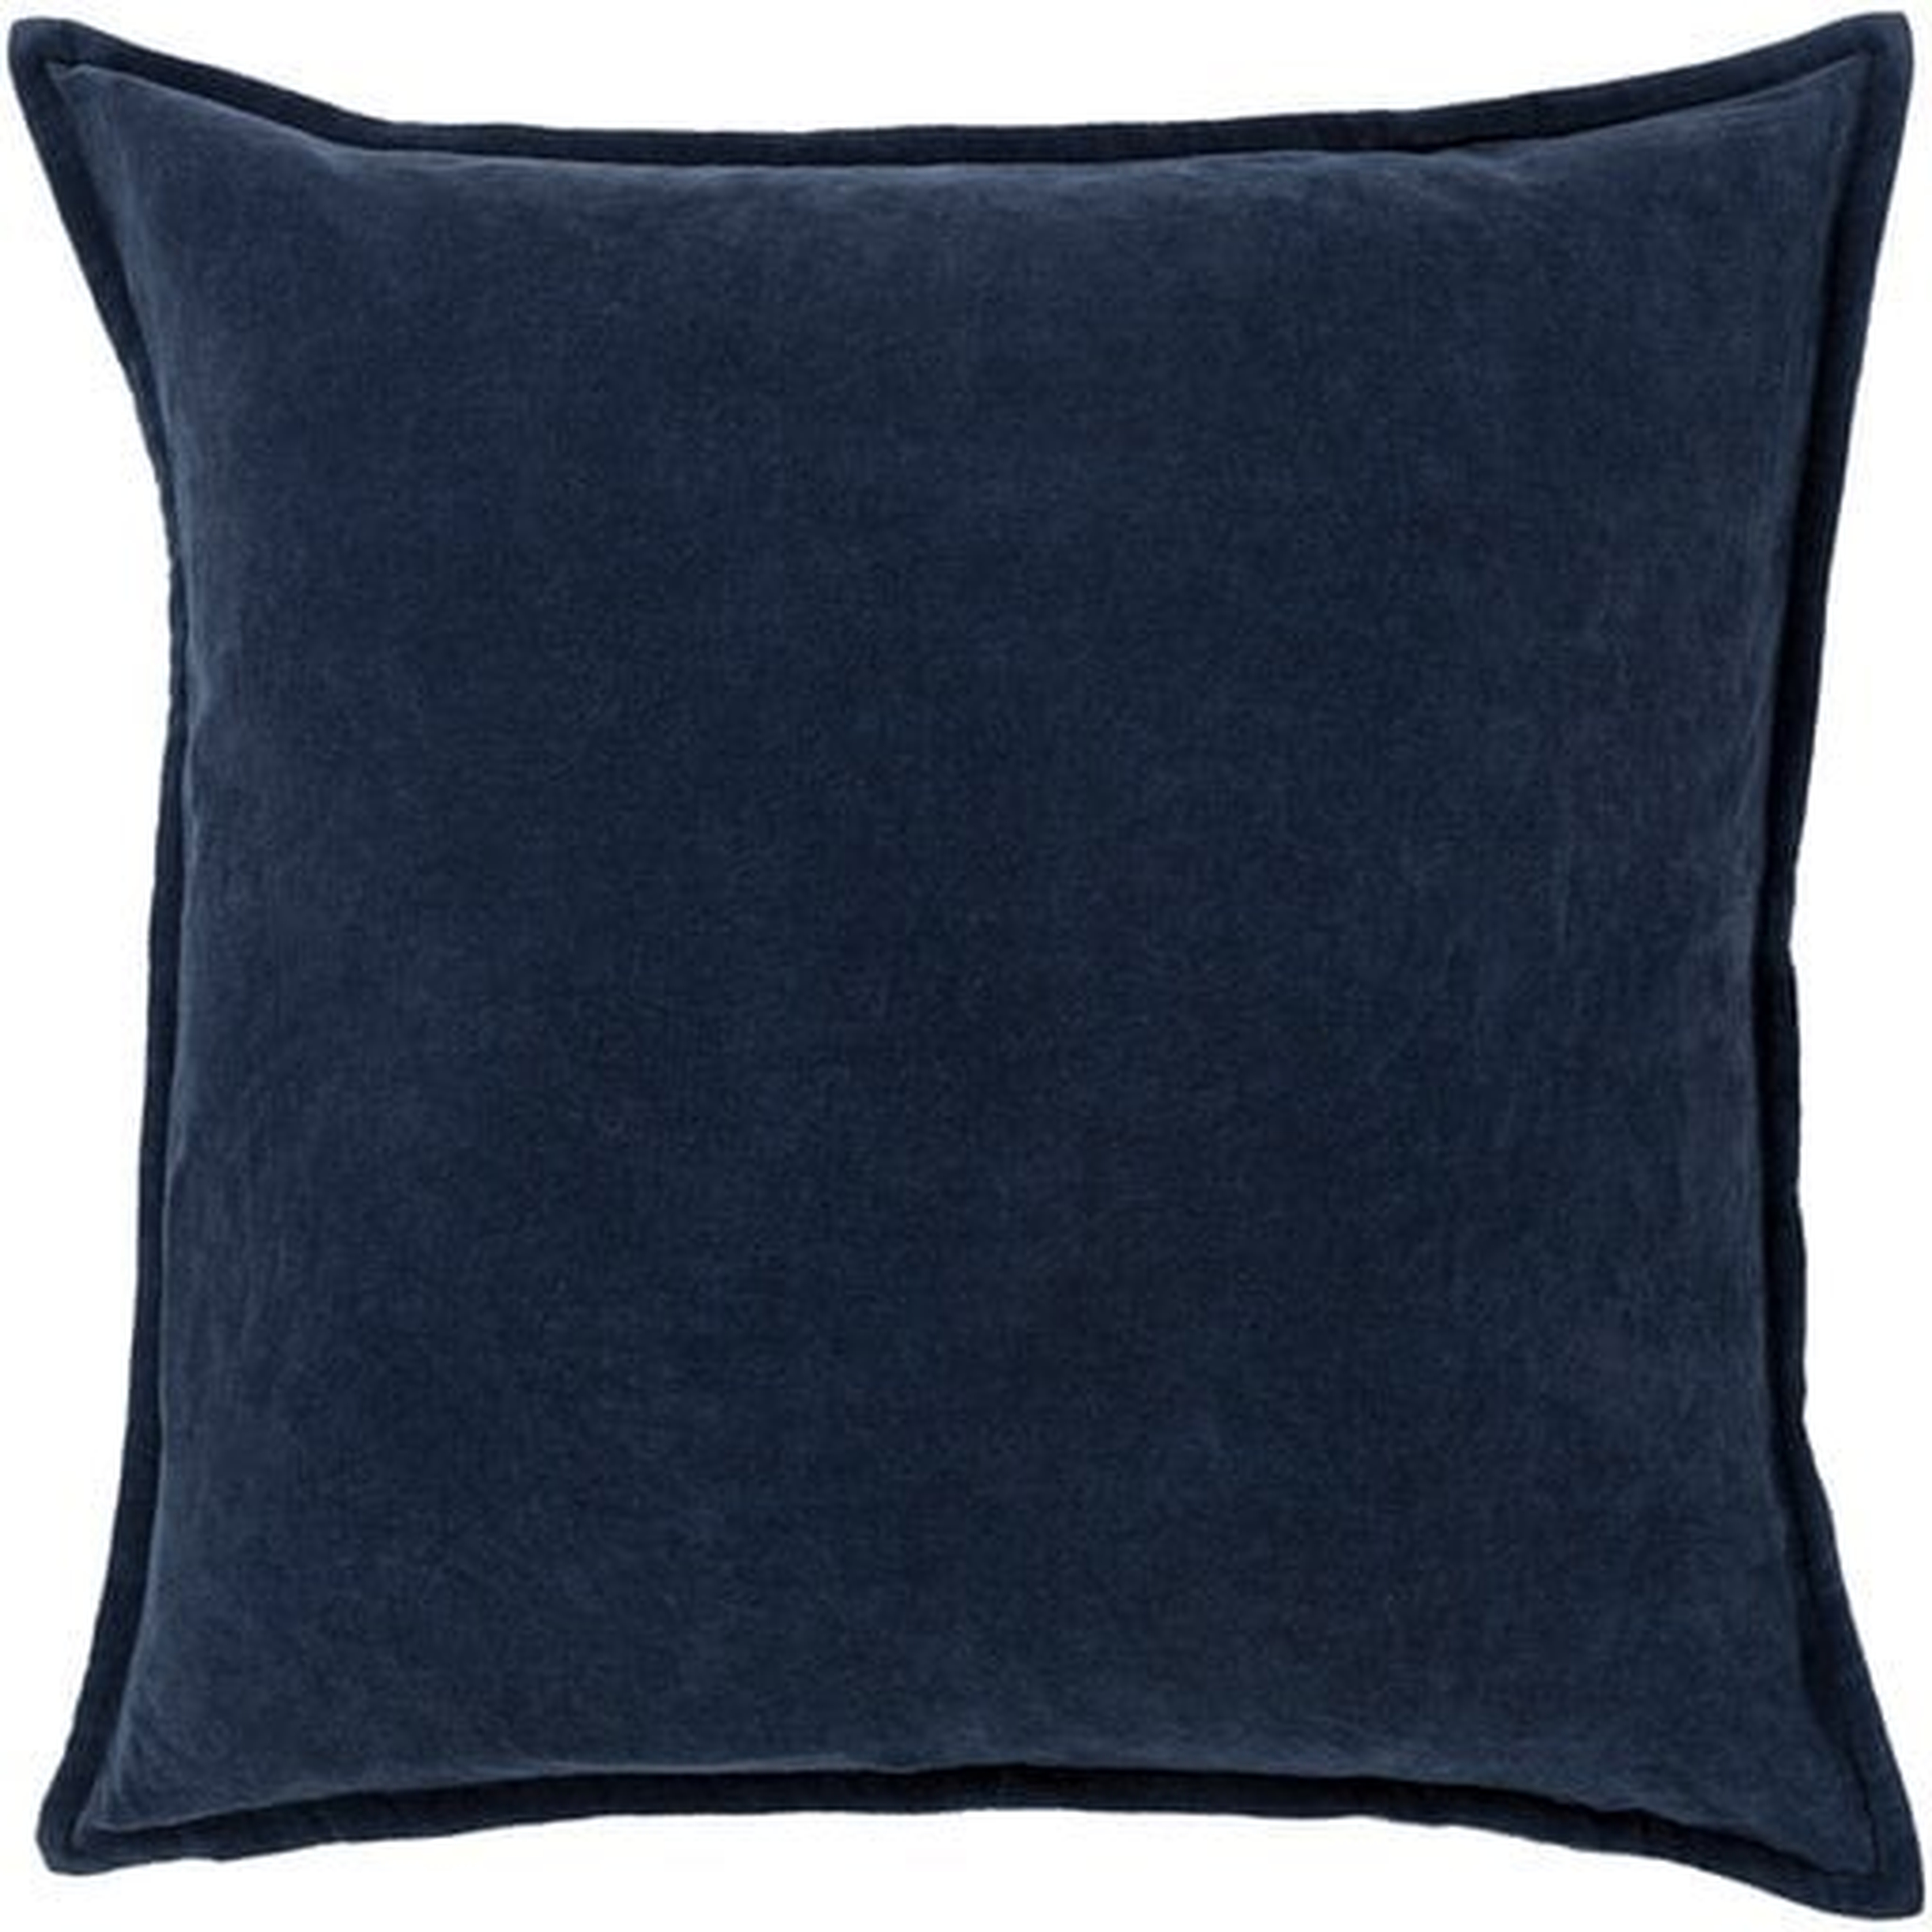 Cotton Velvet Pillow Cover (Insert Not Included) - Surya